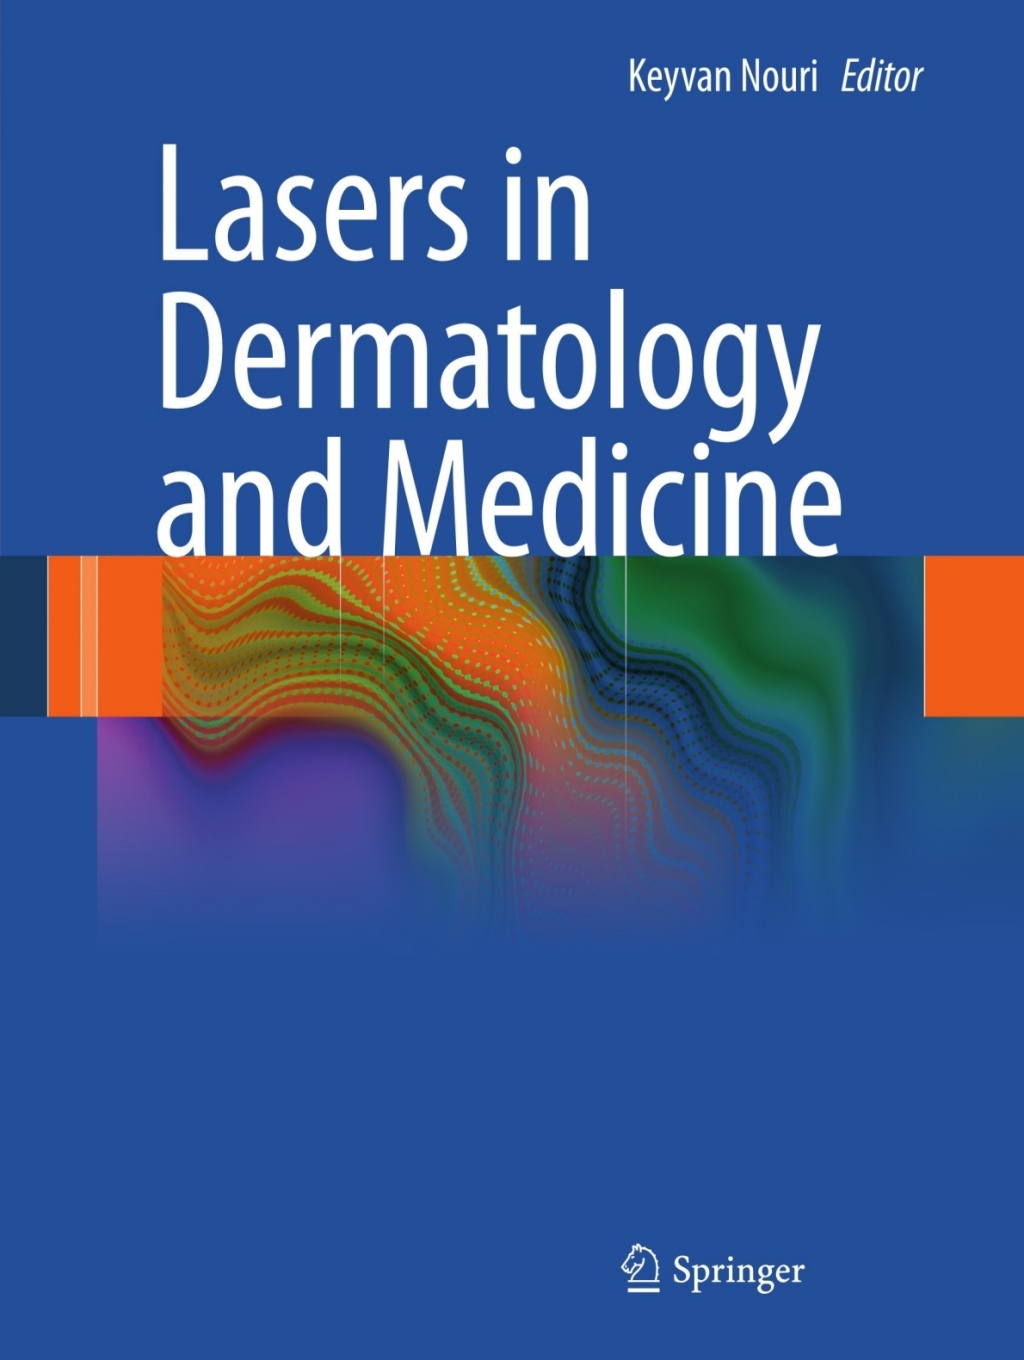 Lasers in Dermatology and Medicine (eBook) - Keyvan Nouri